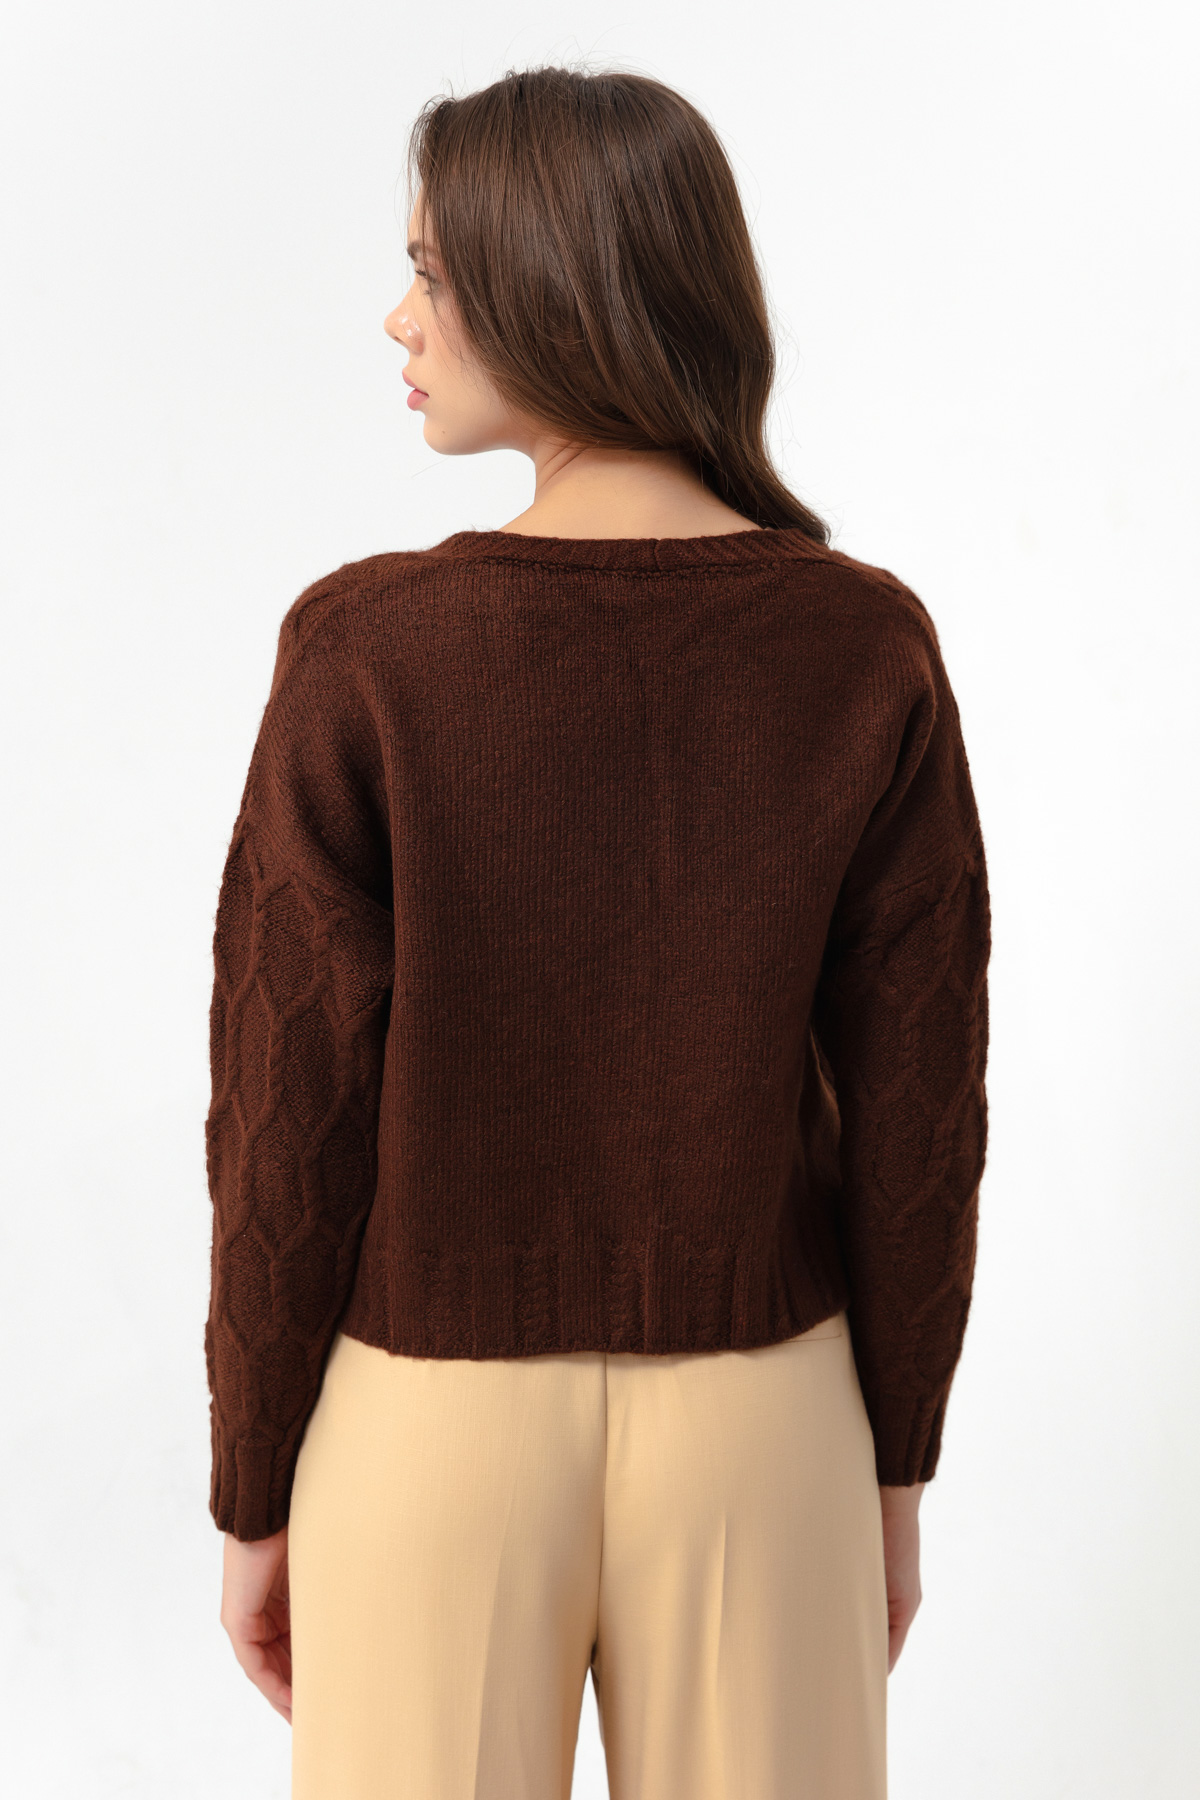 Women's Brown Buttoned Knitwear Cardigan